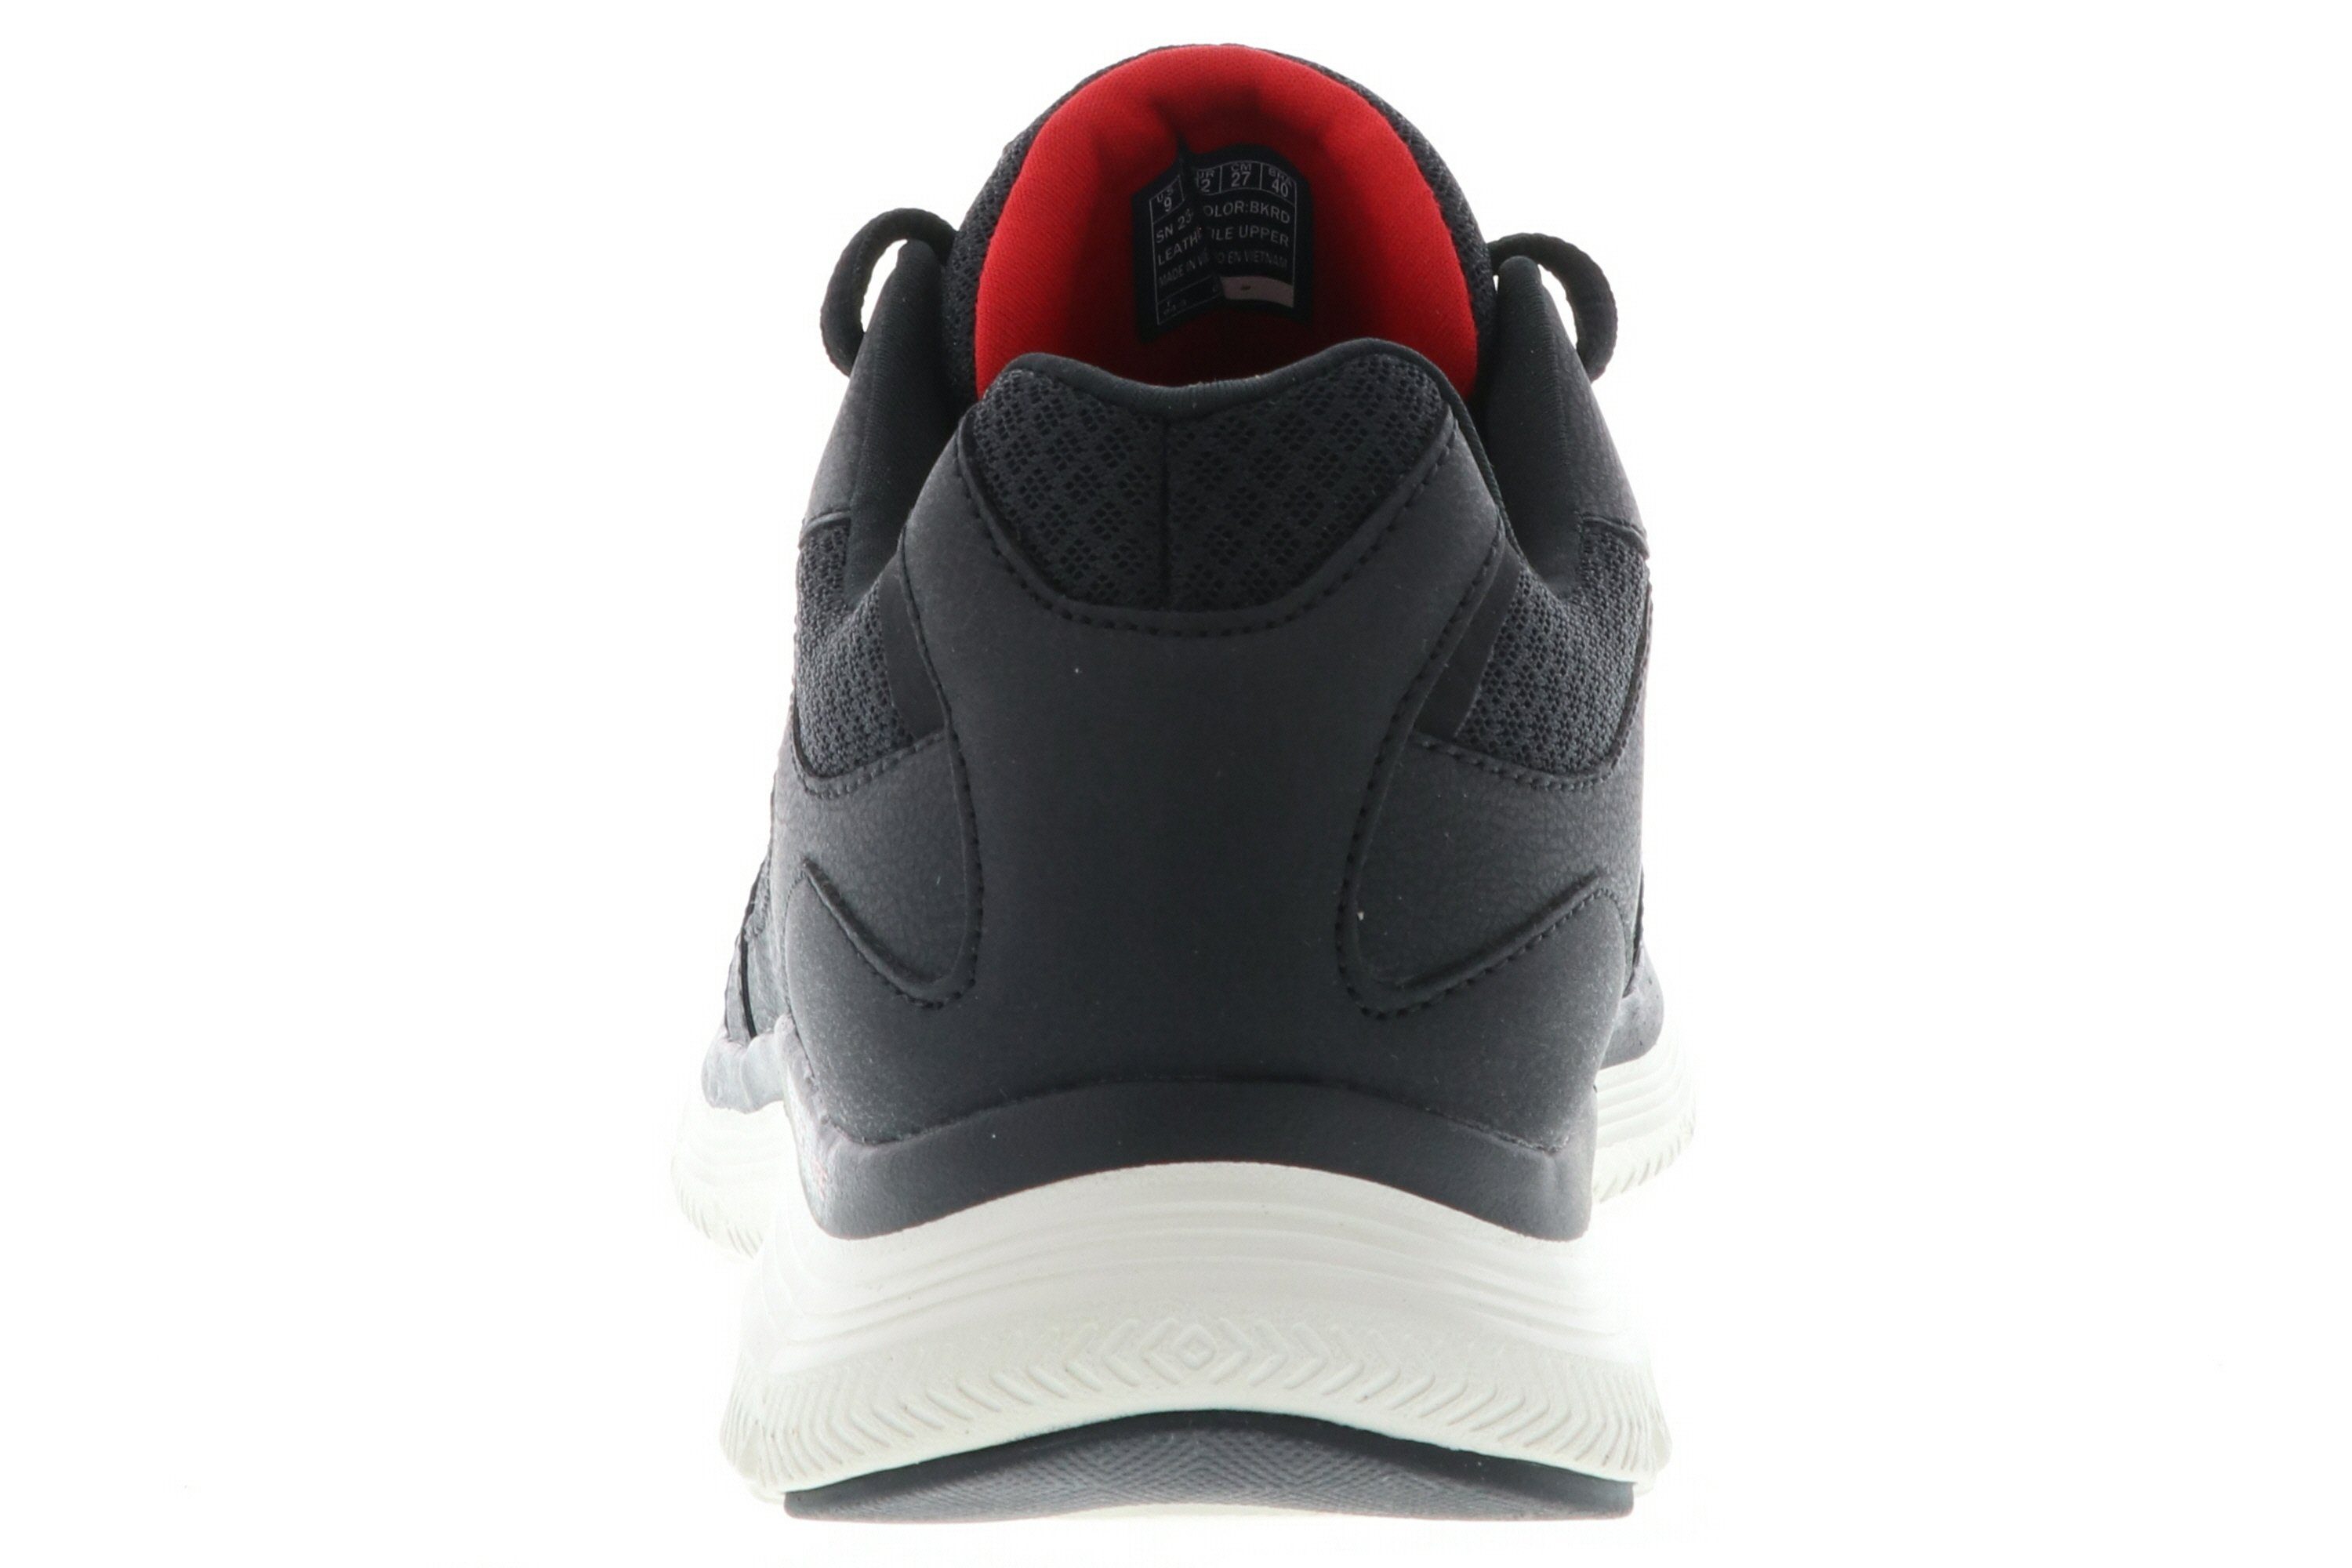 schwarz 232225/BKRD / Sneaker Black/Red Skechers Advantage rot 4.0 Flex